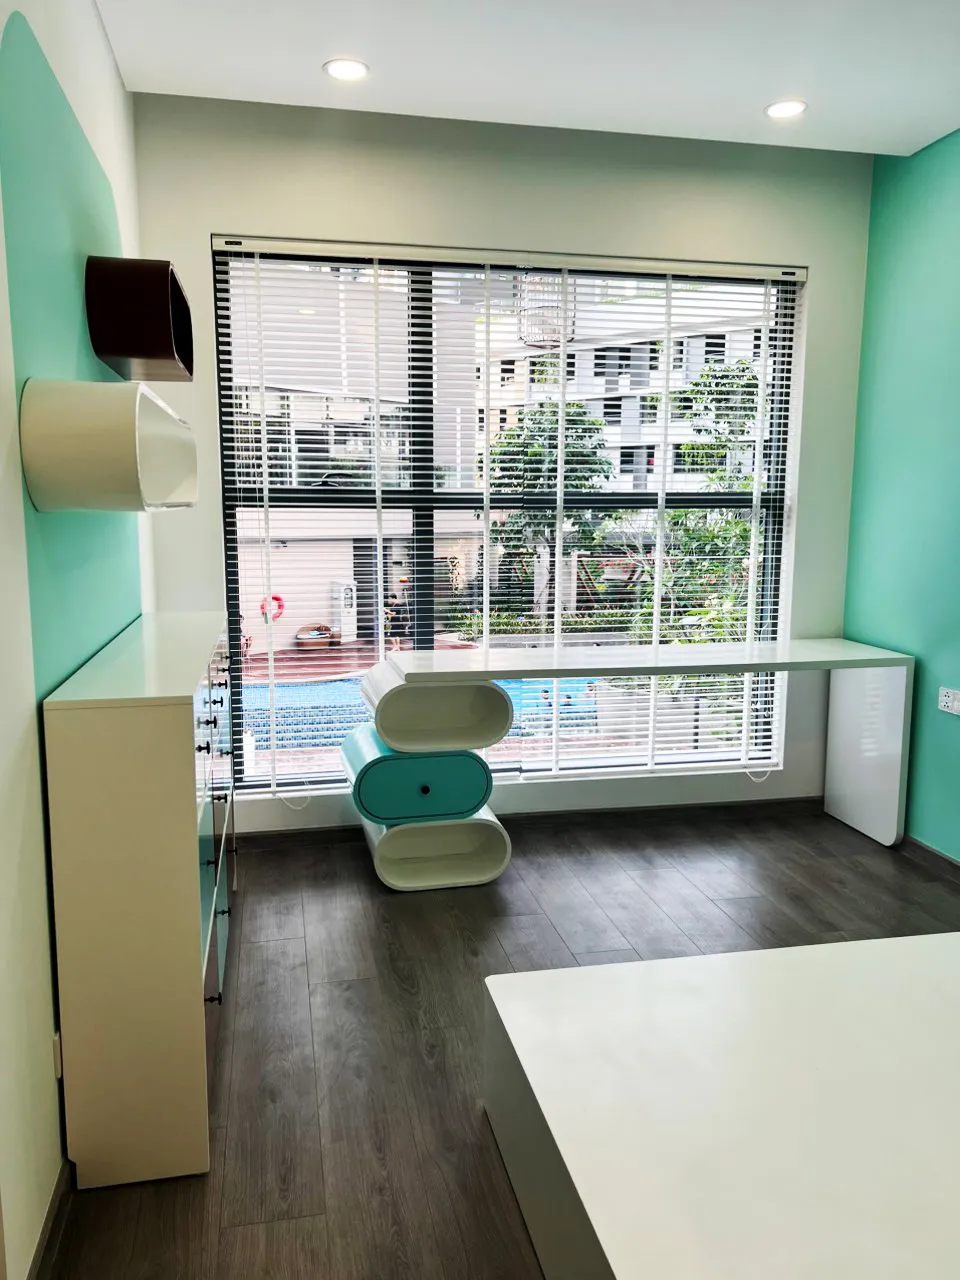 Hoàn thiện nội thất phòng cho bé Căn hộ chung cư Celadon Tân Phú 95m2 mang phong cách Color Block